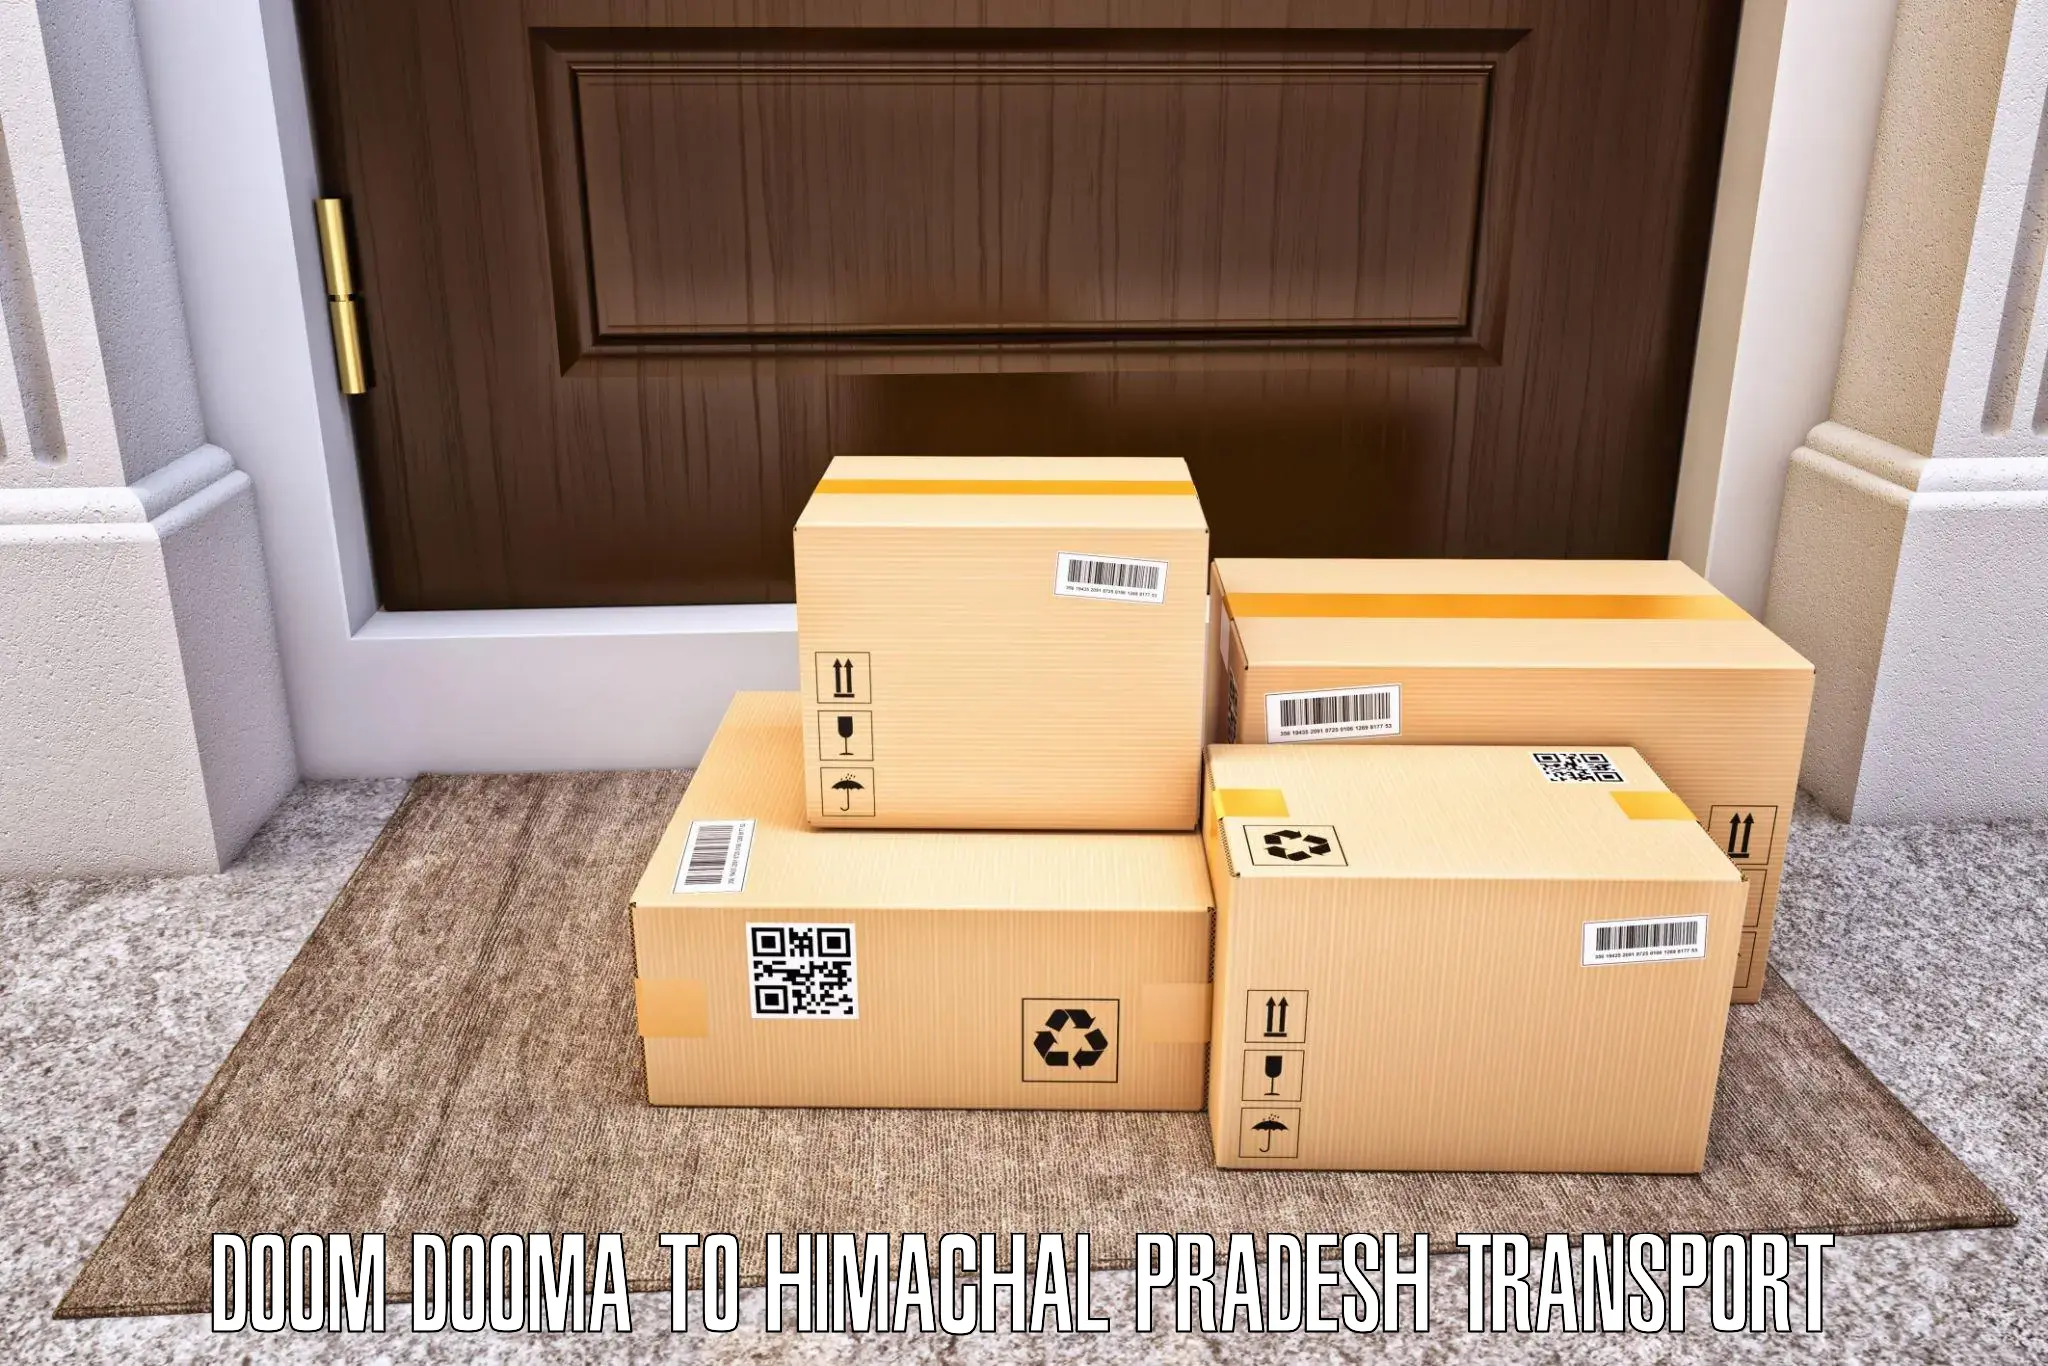 Daily parcel service transport Doom Dooma to Sundar Nagar